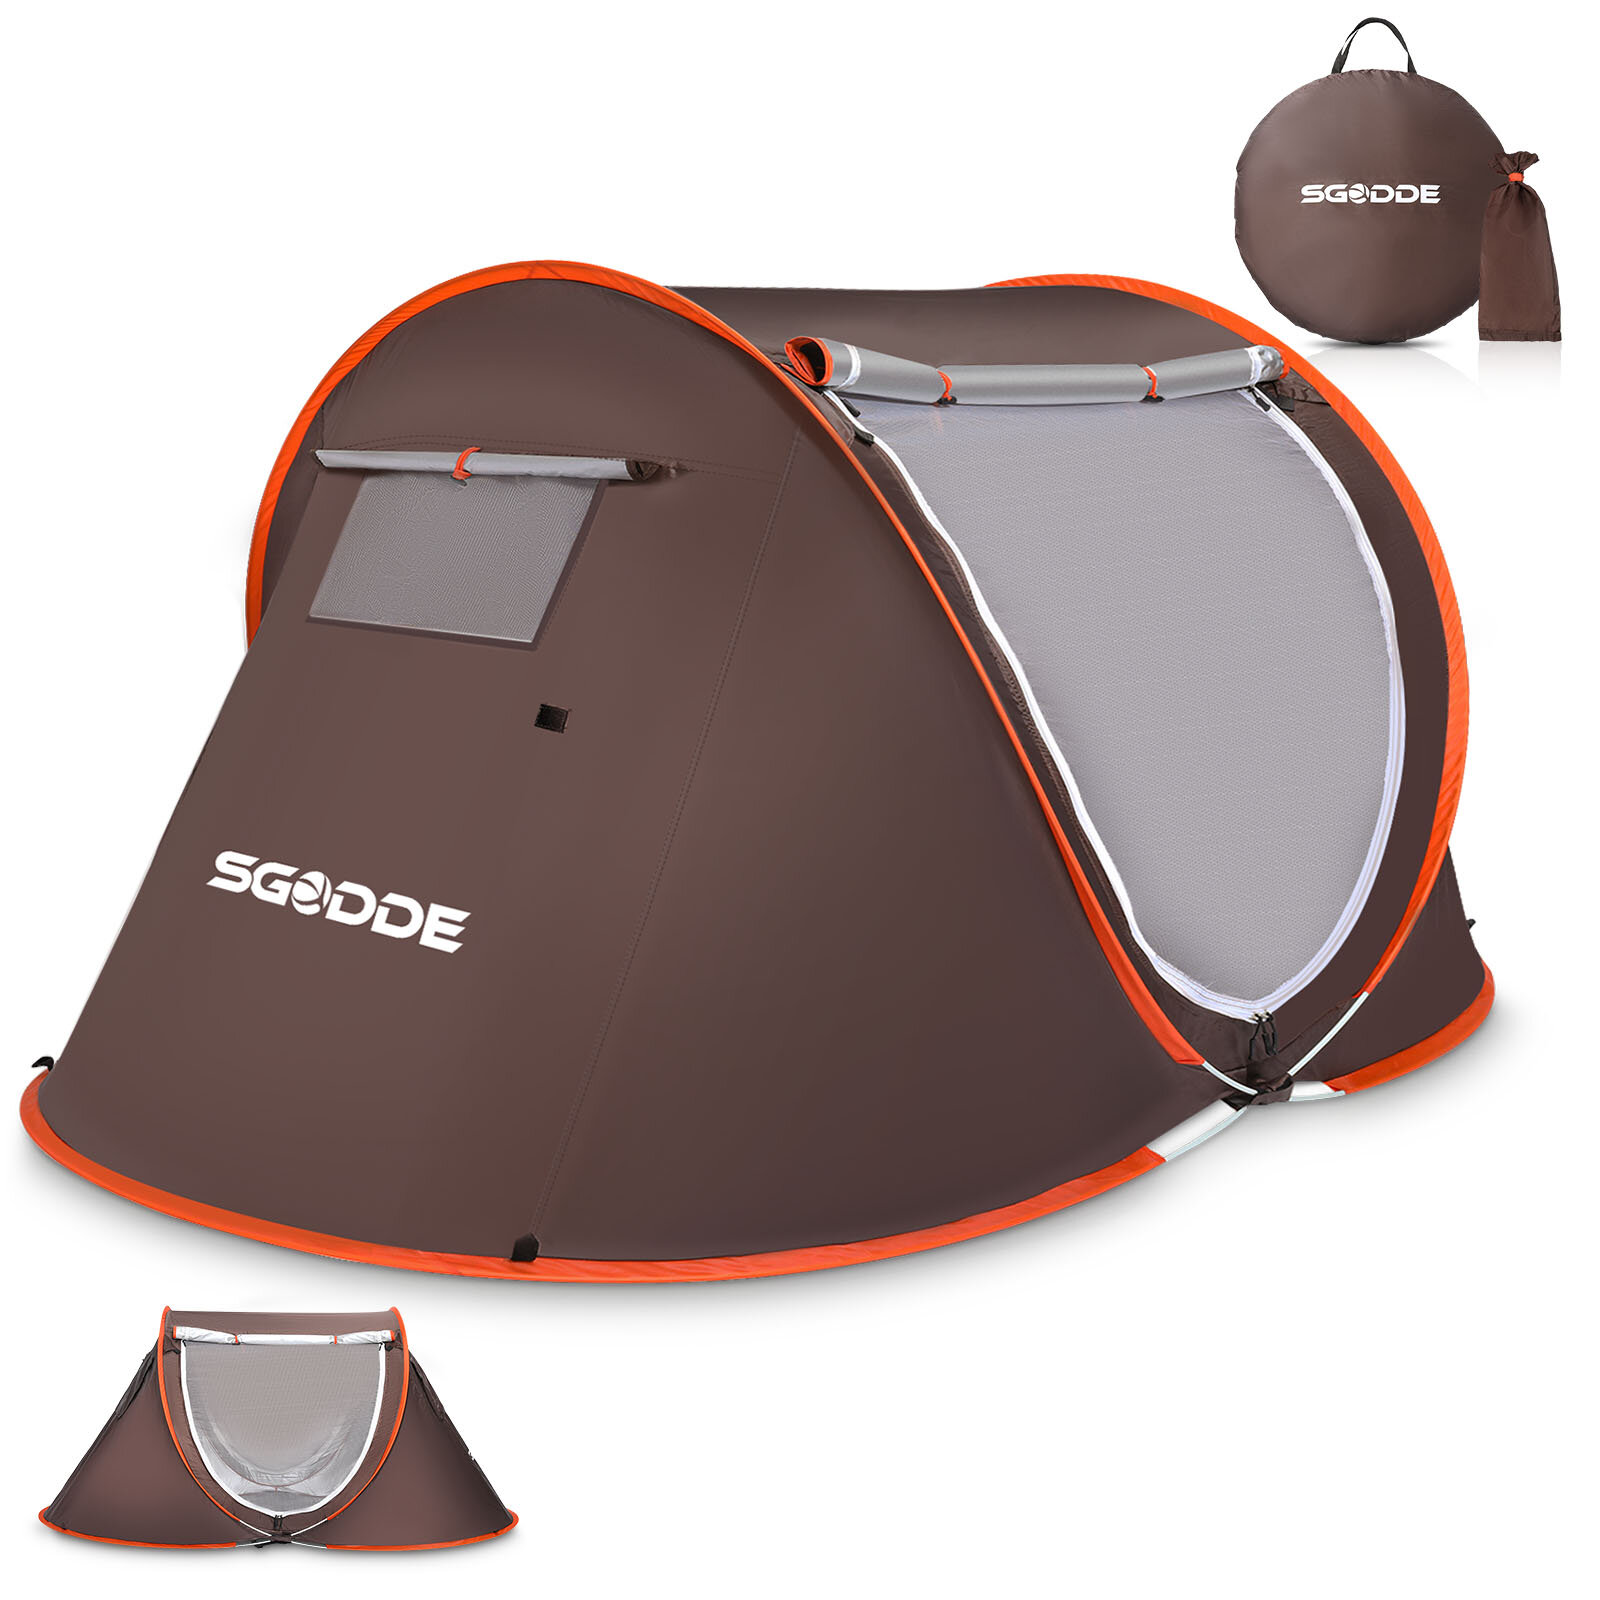 Tenda automática SGODDE para 2-3 pessoas Tenda de acampamento anti-UV Tenda impermeável para exteriores Sunshelter